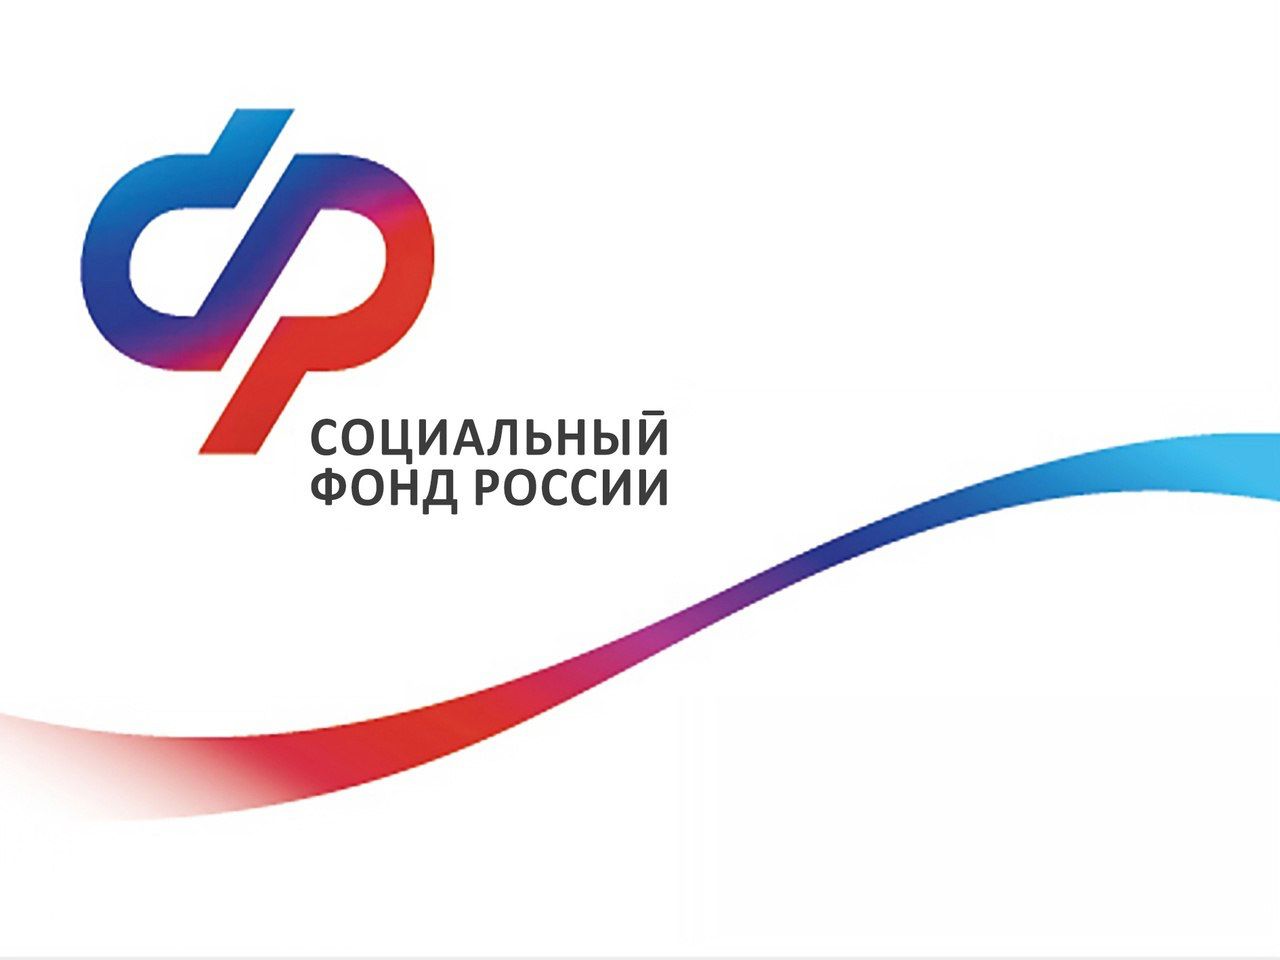 С 1 апреля граждане могут проконсультироваться со специалистами Отделения СФР по Новгородской области по видеосвязи.